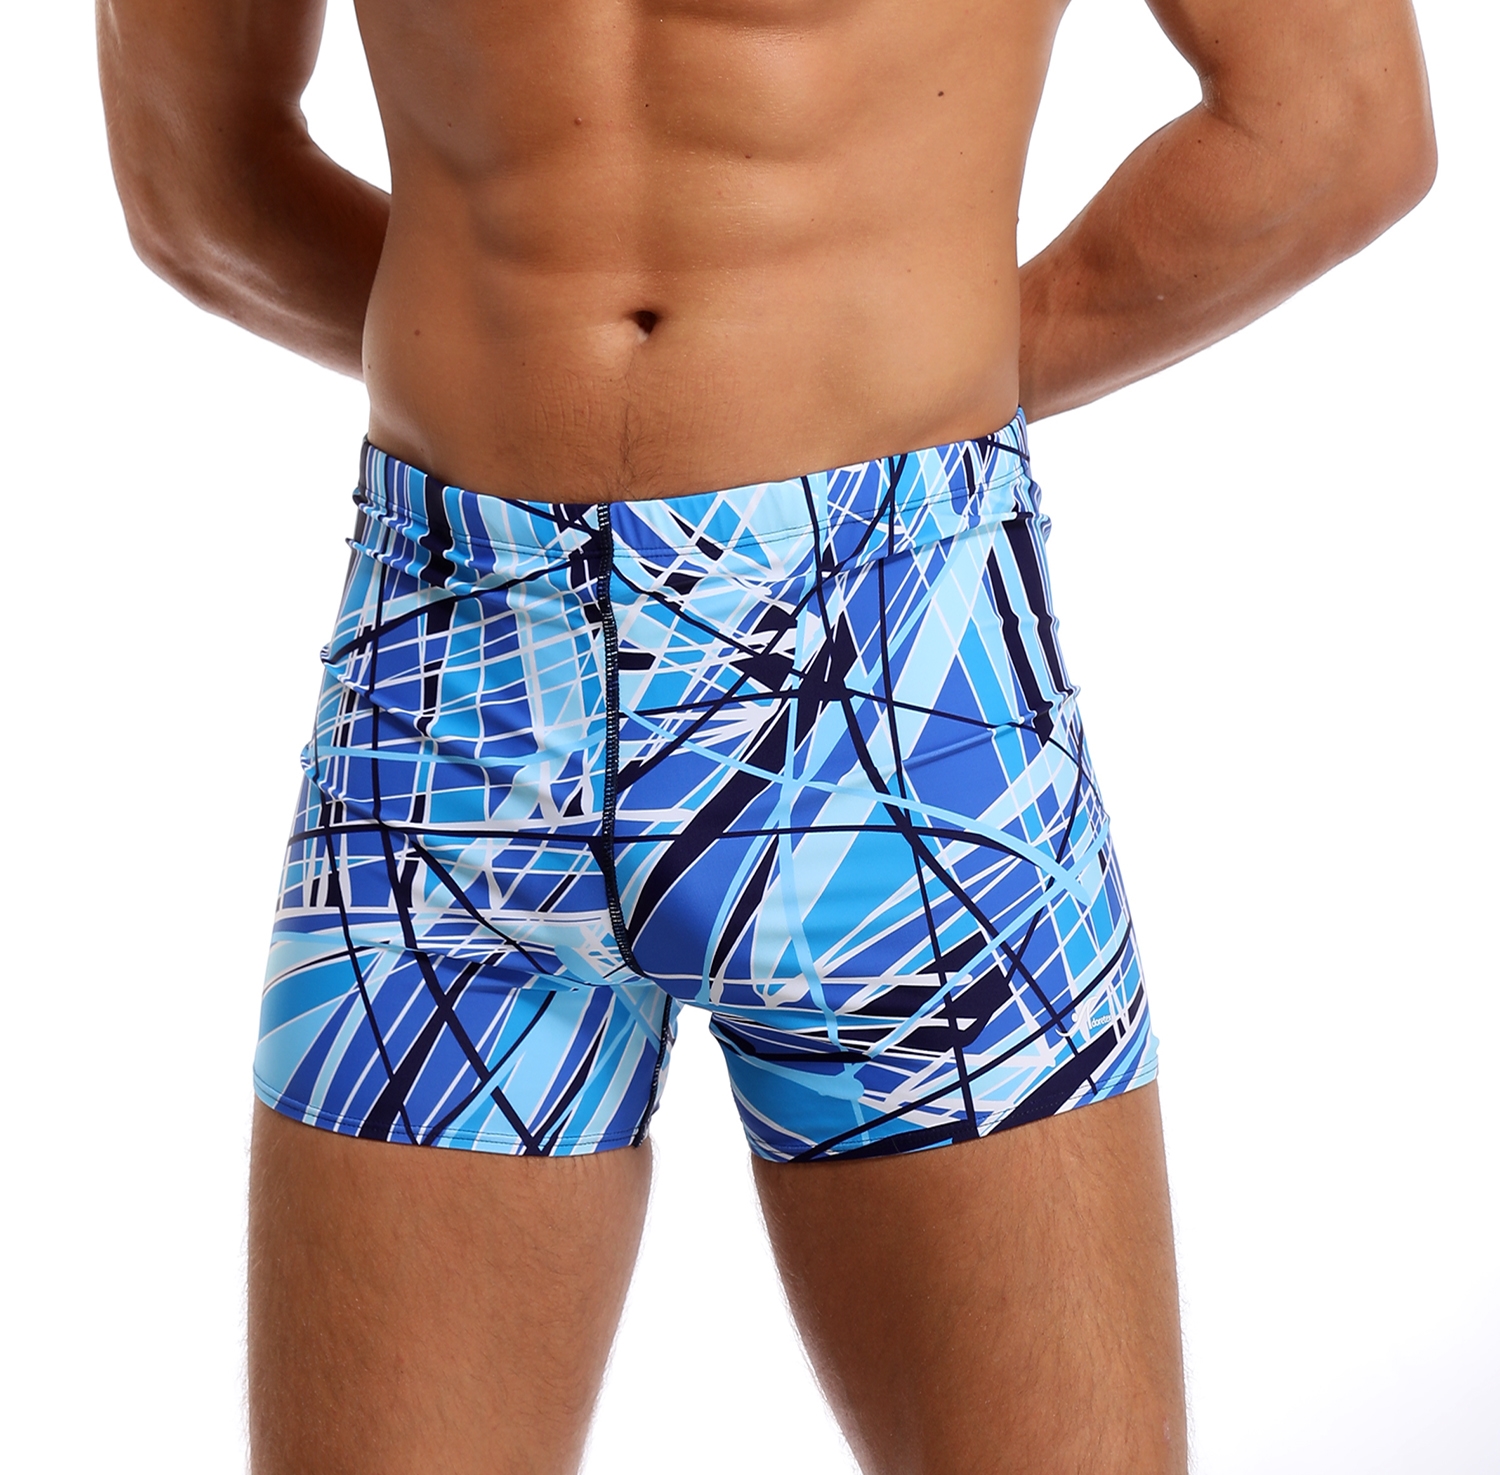 Adoretex Men's Printed Swim Brief Square Leg Shorts Swimsuit